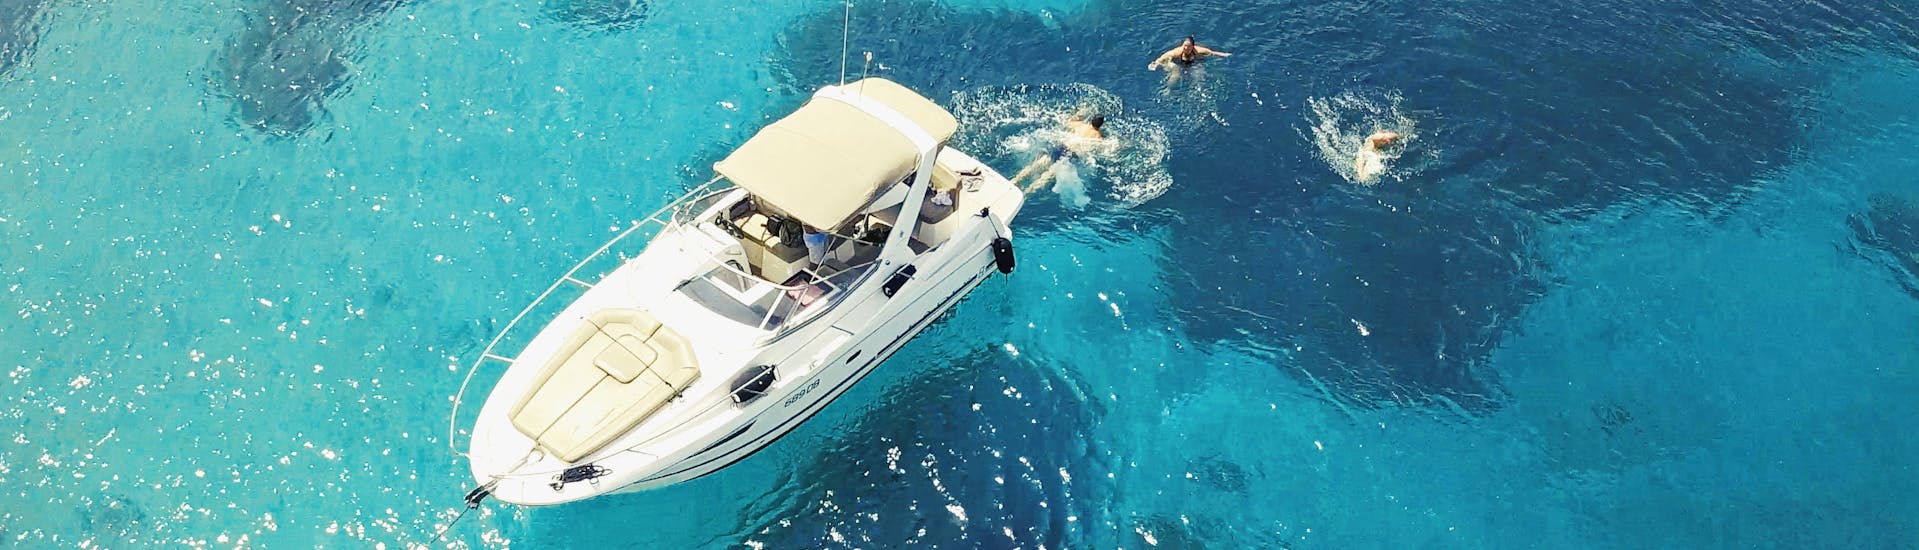 Boot auf klarem Wasser während der privaten Halbtagestour mit einem luxuriösen Motorboot zu den Elaphiti-Inseln von Dubrovnik aus, veranstaltet von Snooky Tours Dubrovnik.